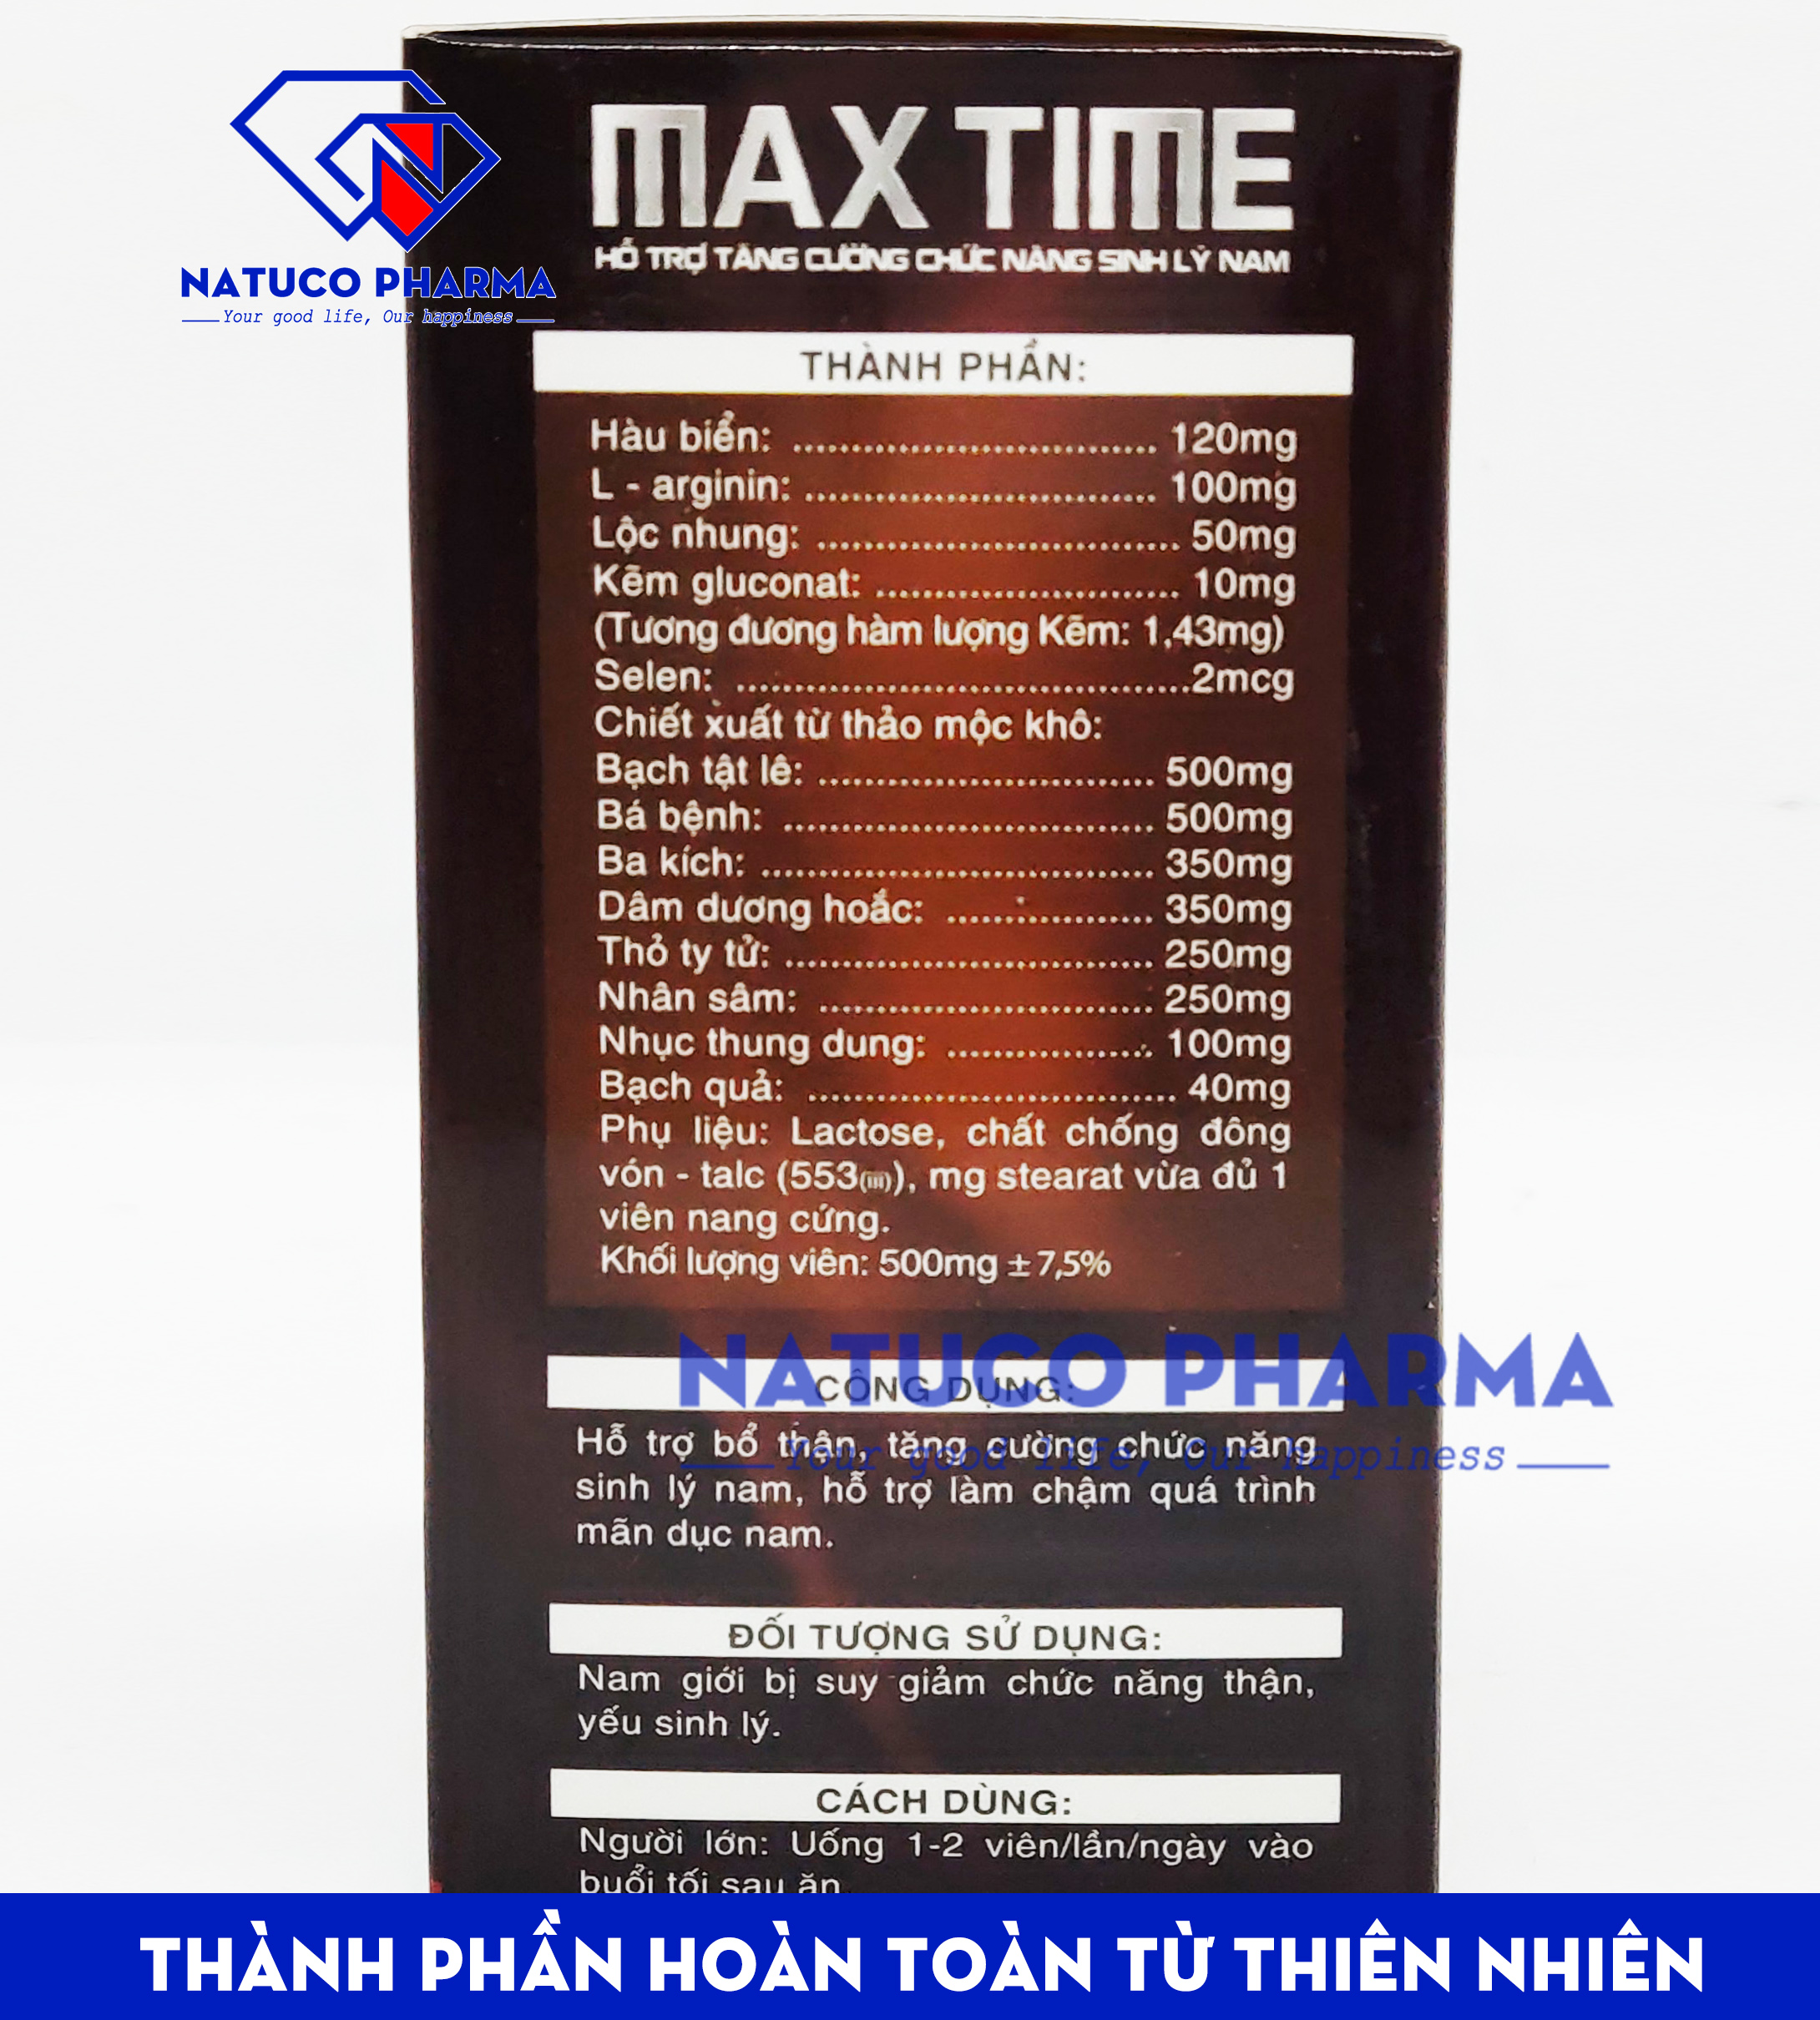 Viên uống tăng cường sinh lý MAX TIME - Thành phần hàu biển, ba kích, nhân sâm giúp bổ thận...